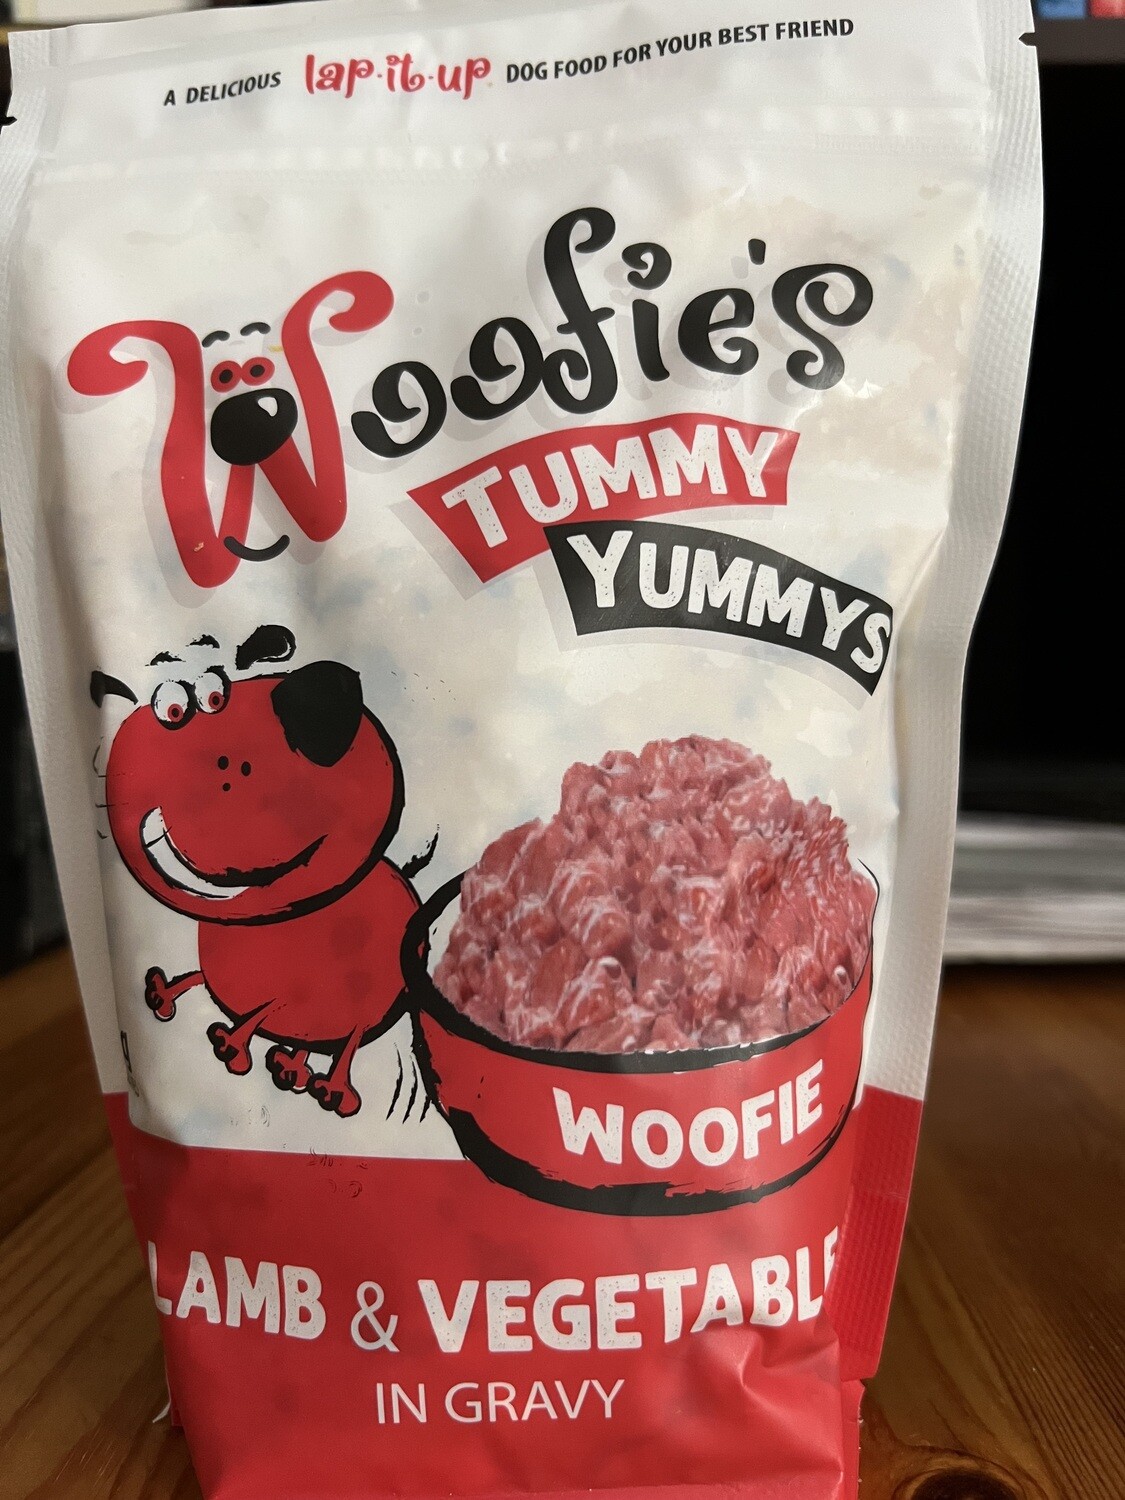 Woofies lamb & vegetable dog food